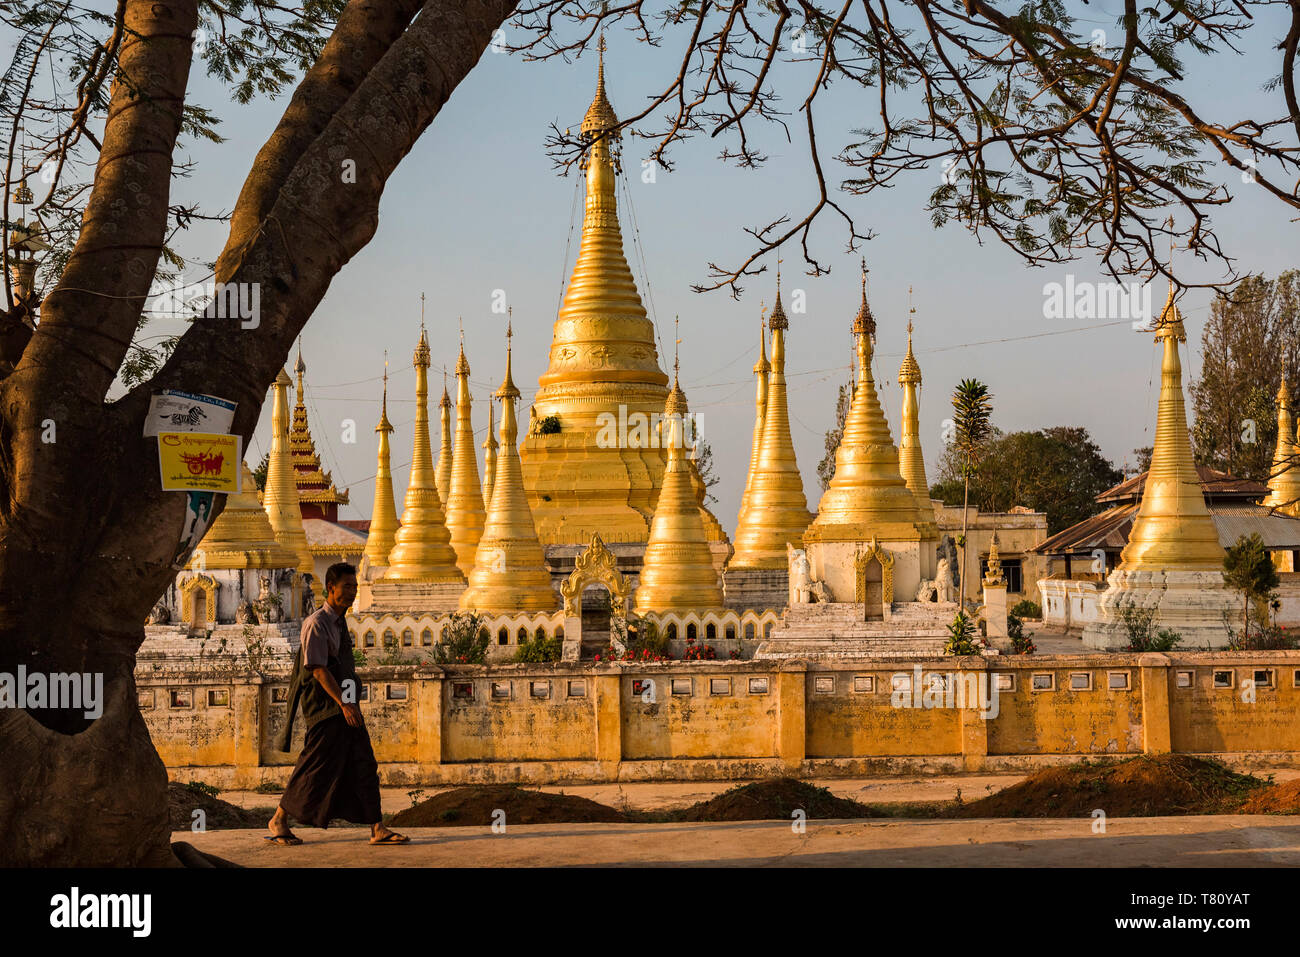 Scena di strada con il monaco buddista, Pindaya, Stato Shan, Myanmar (Birmania) Foto Stock